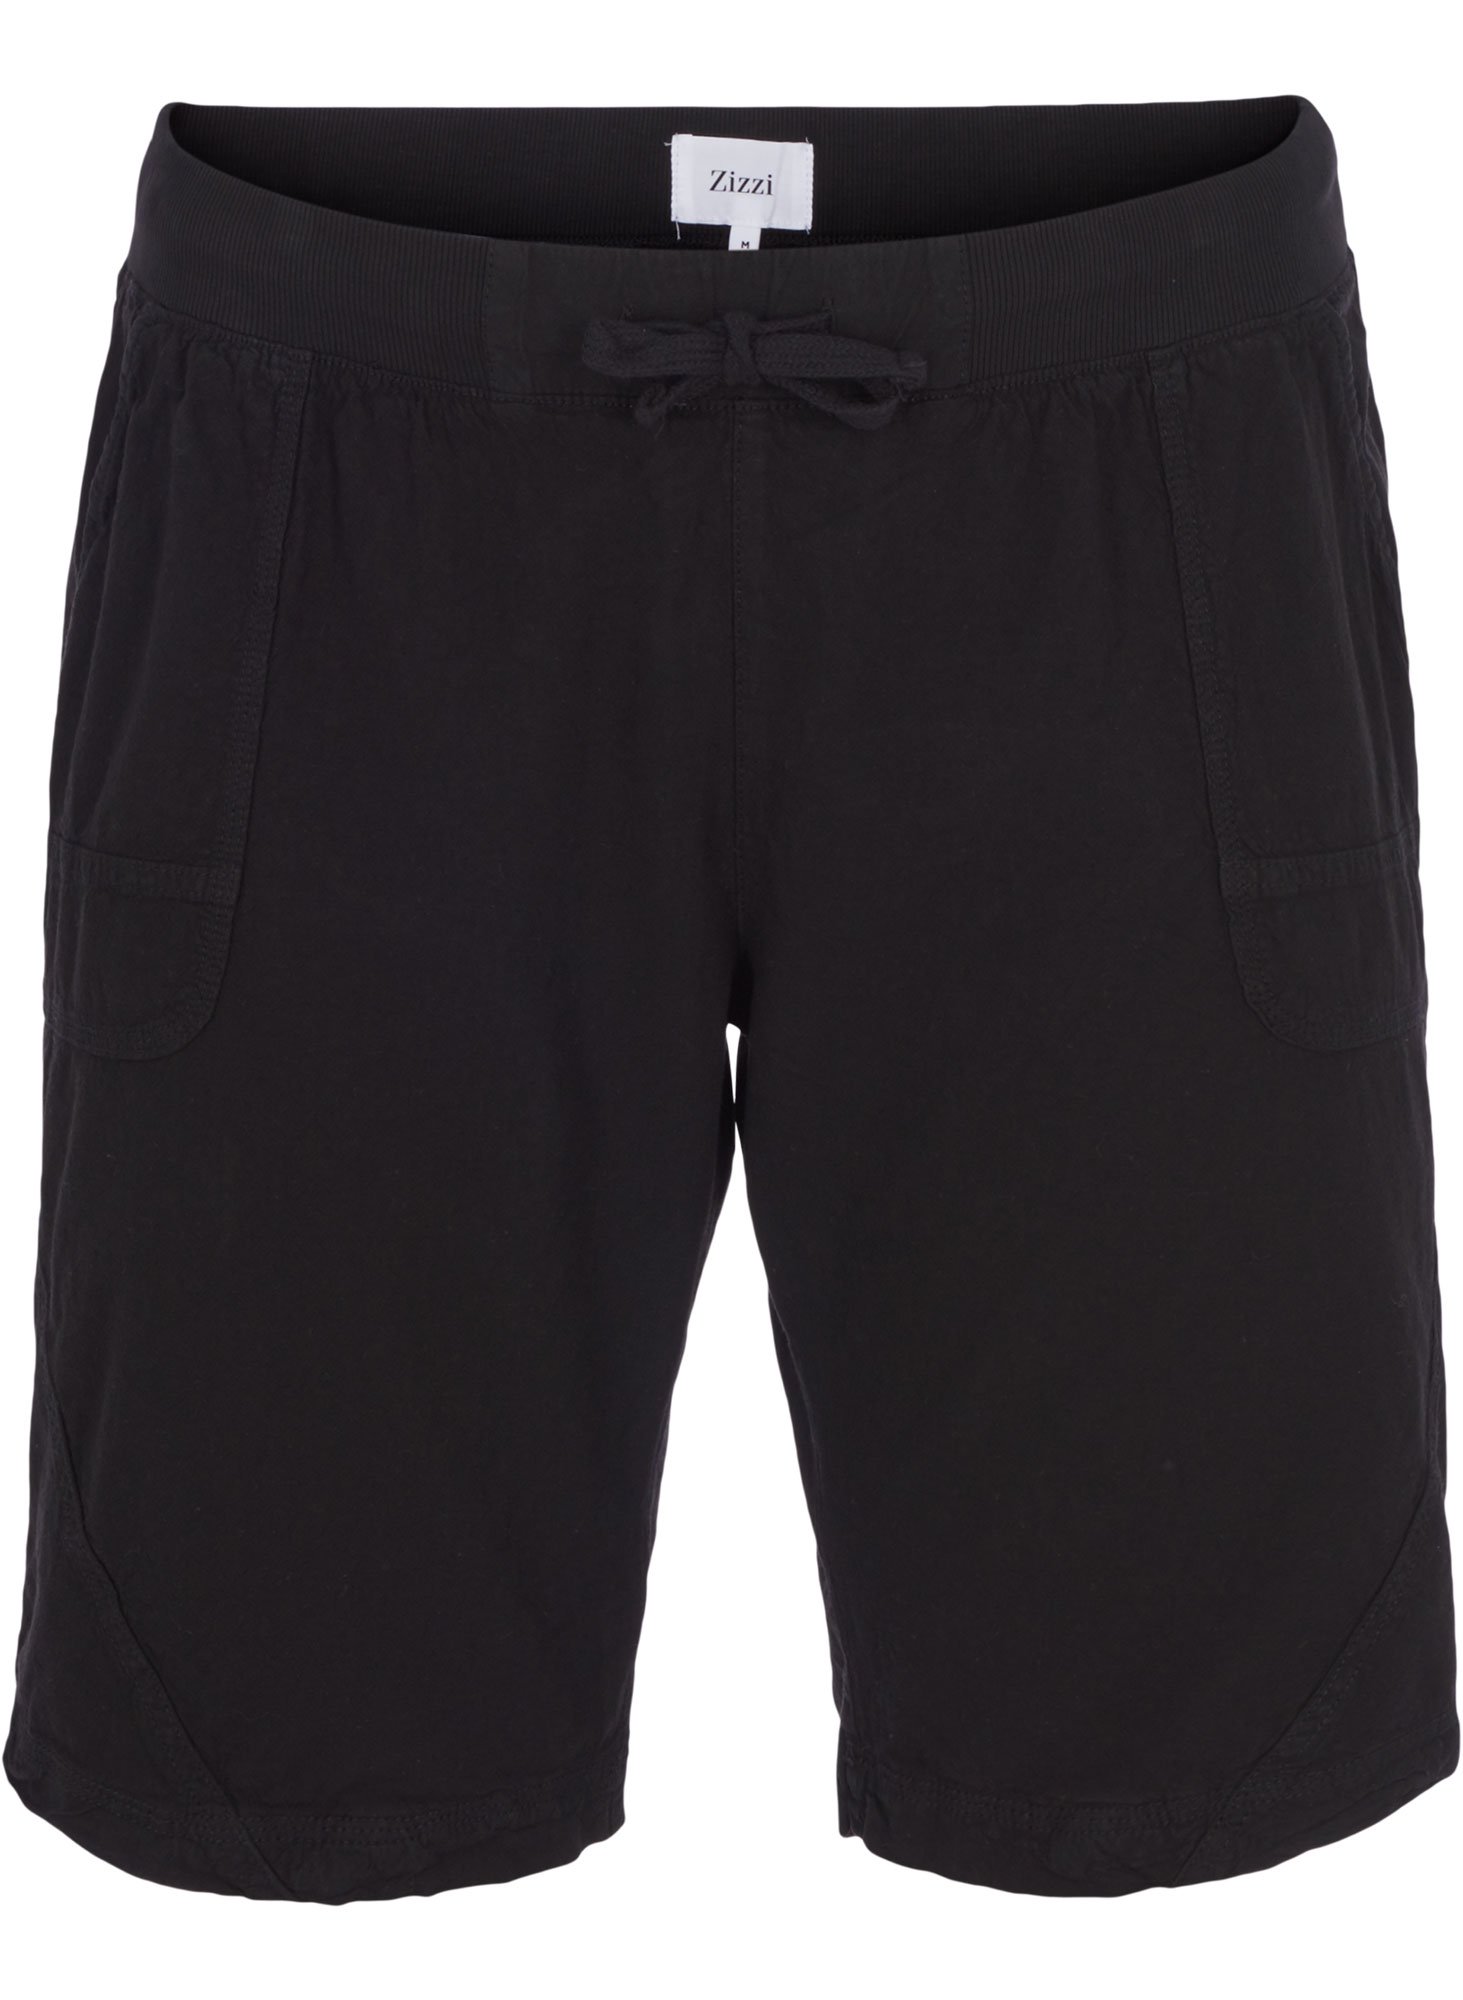 skønne sorte shorts i 100% bomuld fra Zizzi